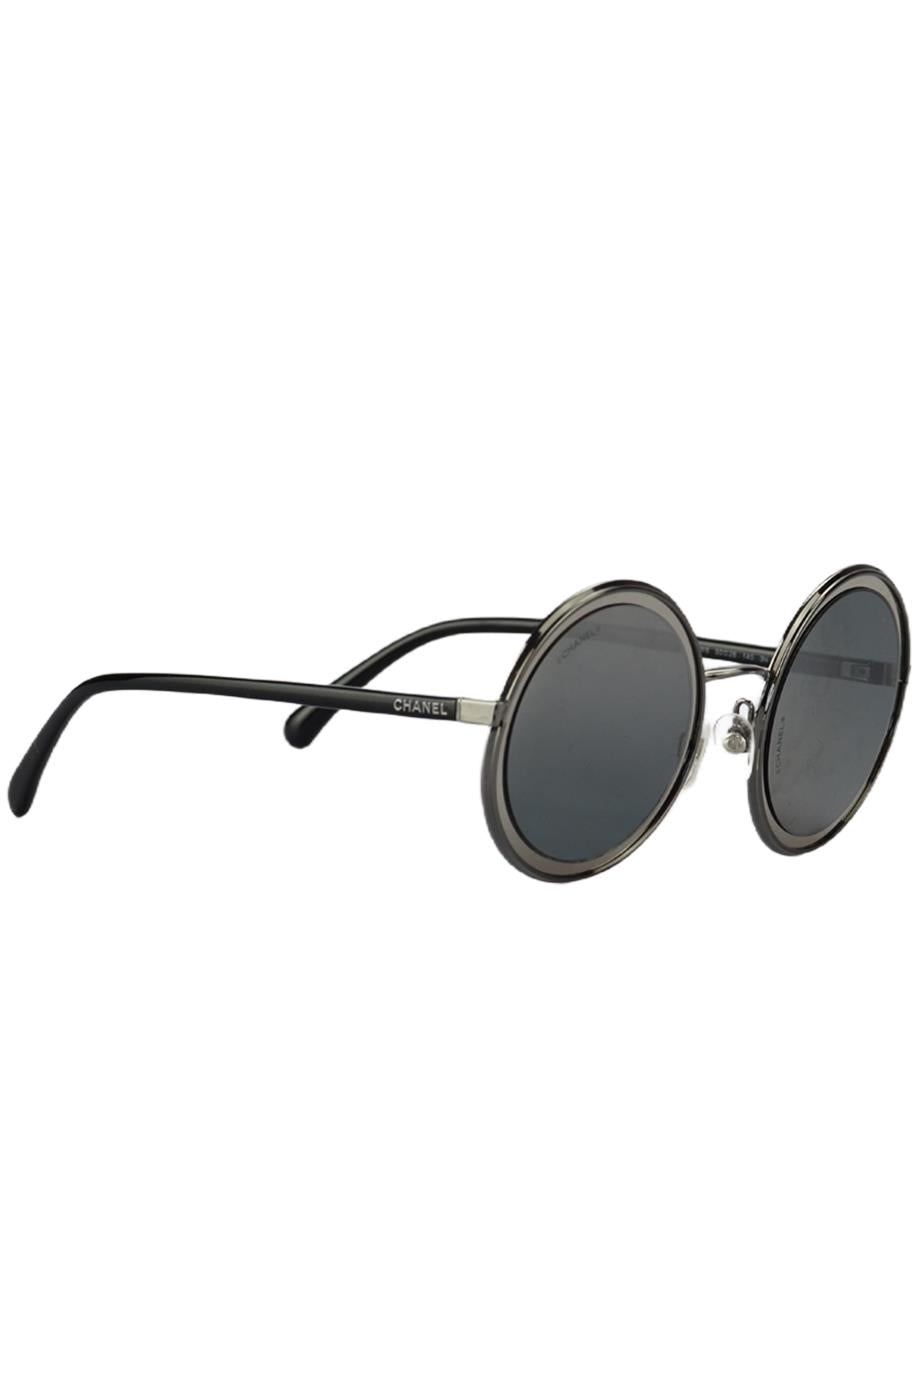 Sunglasses CHANEL CH5489 - Mia Burton